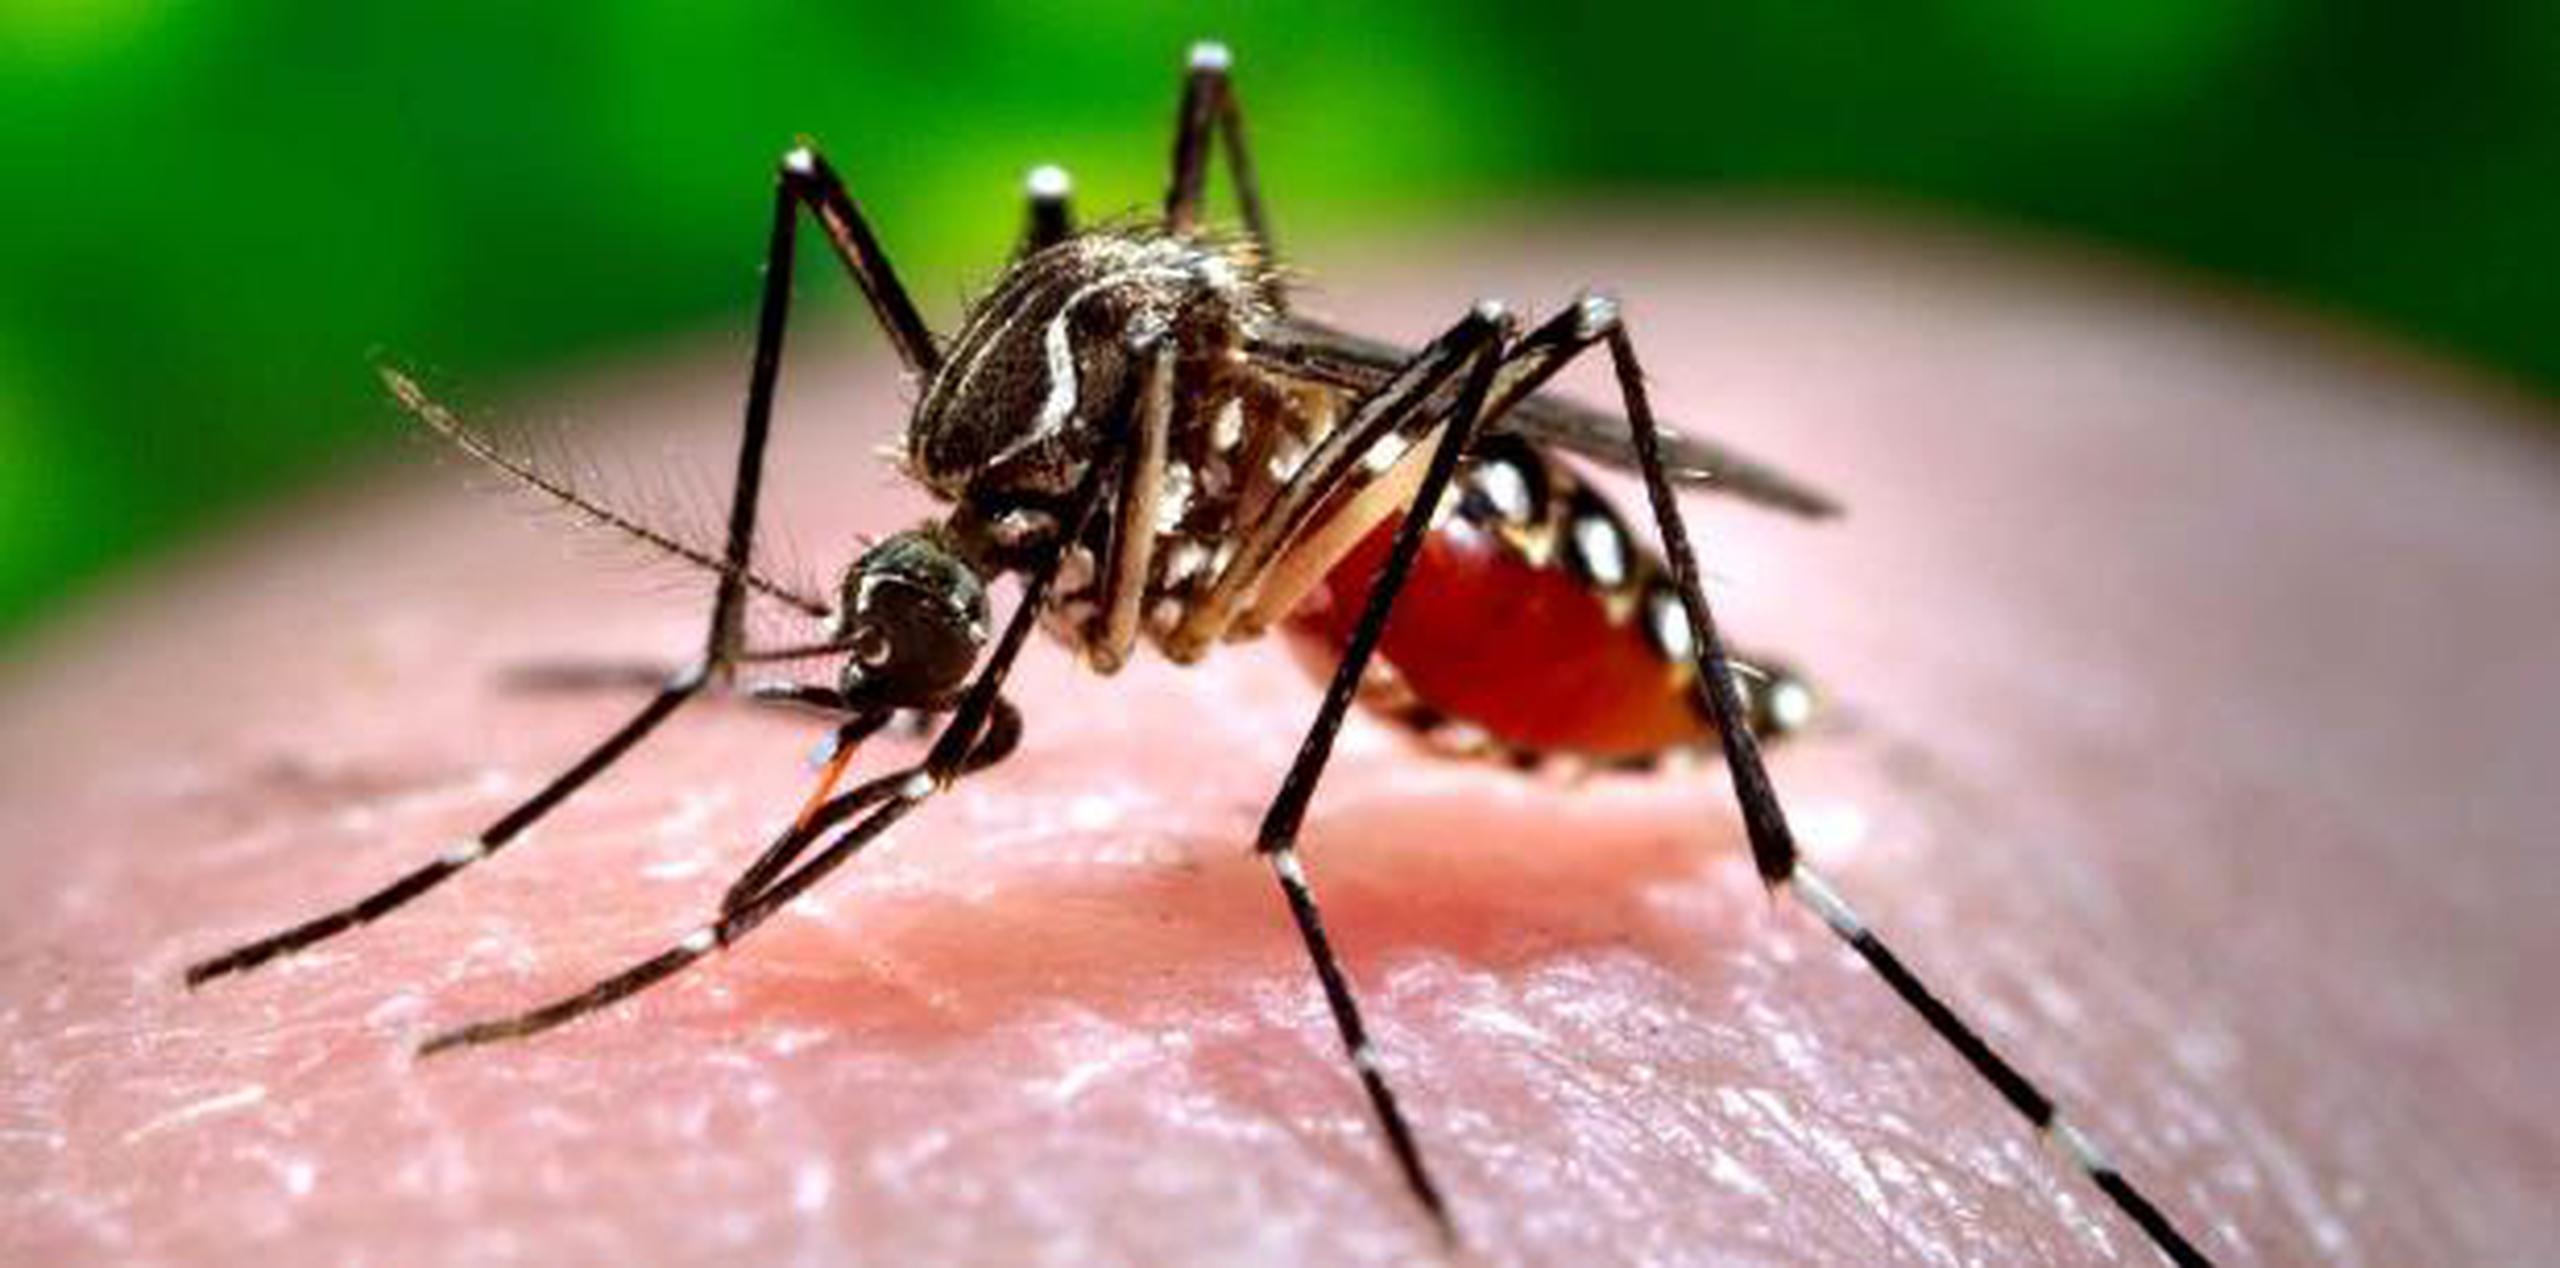 Cerca de 80 personas se contagian con dengue cada día en Nicaragua, el país con mayor incidencia de esta enfermedad en el continente americano, según las autoridades. (Archivo)